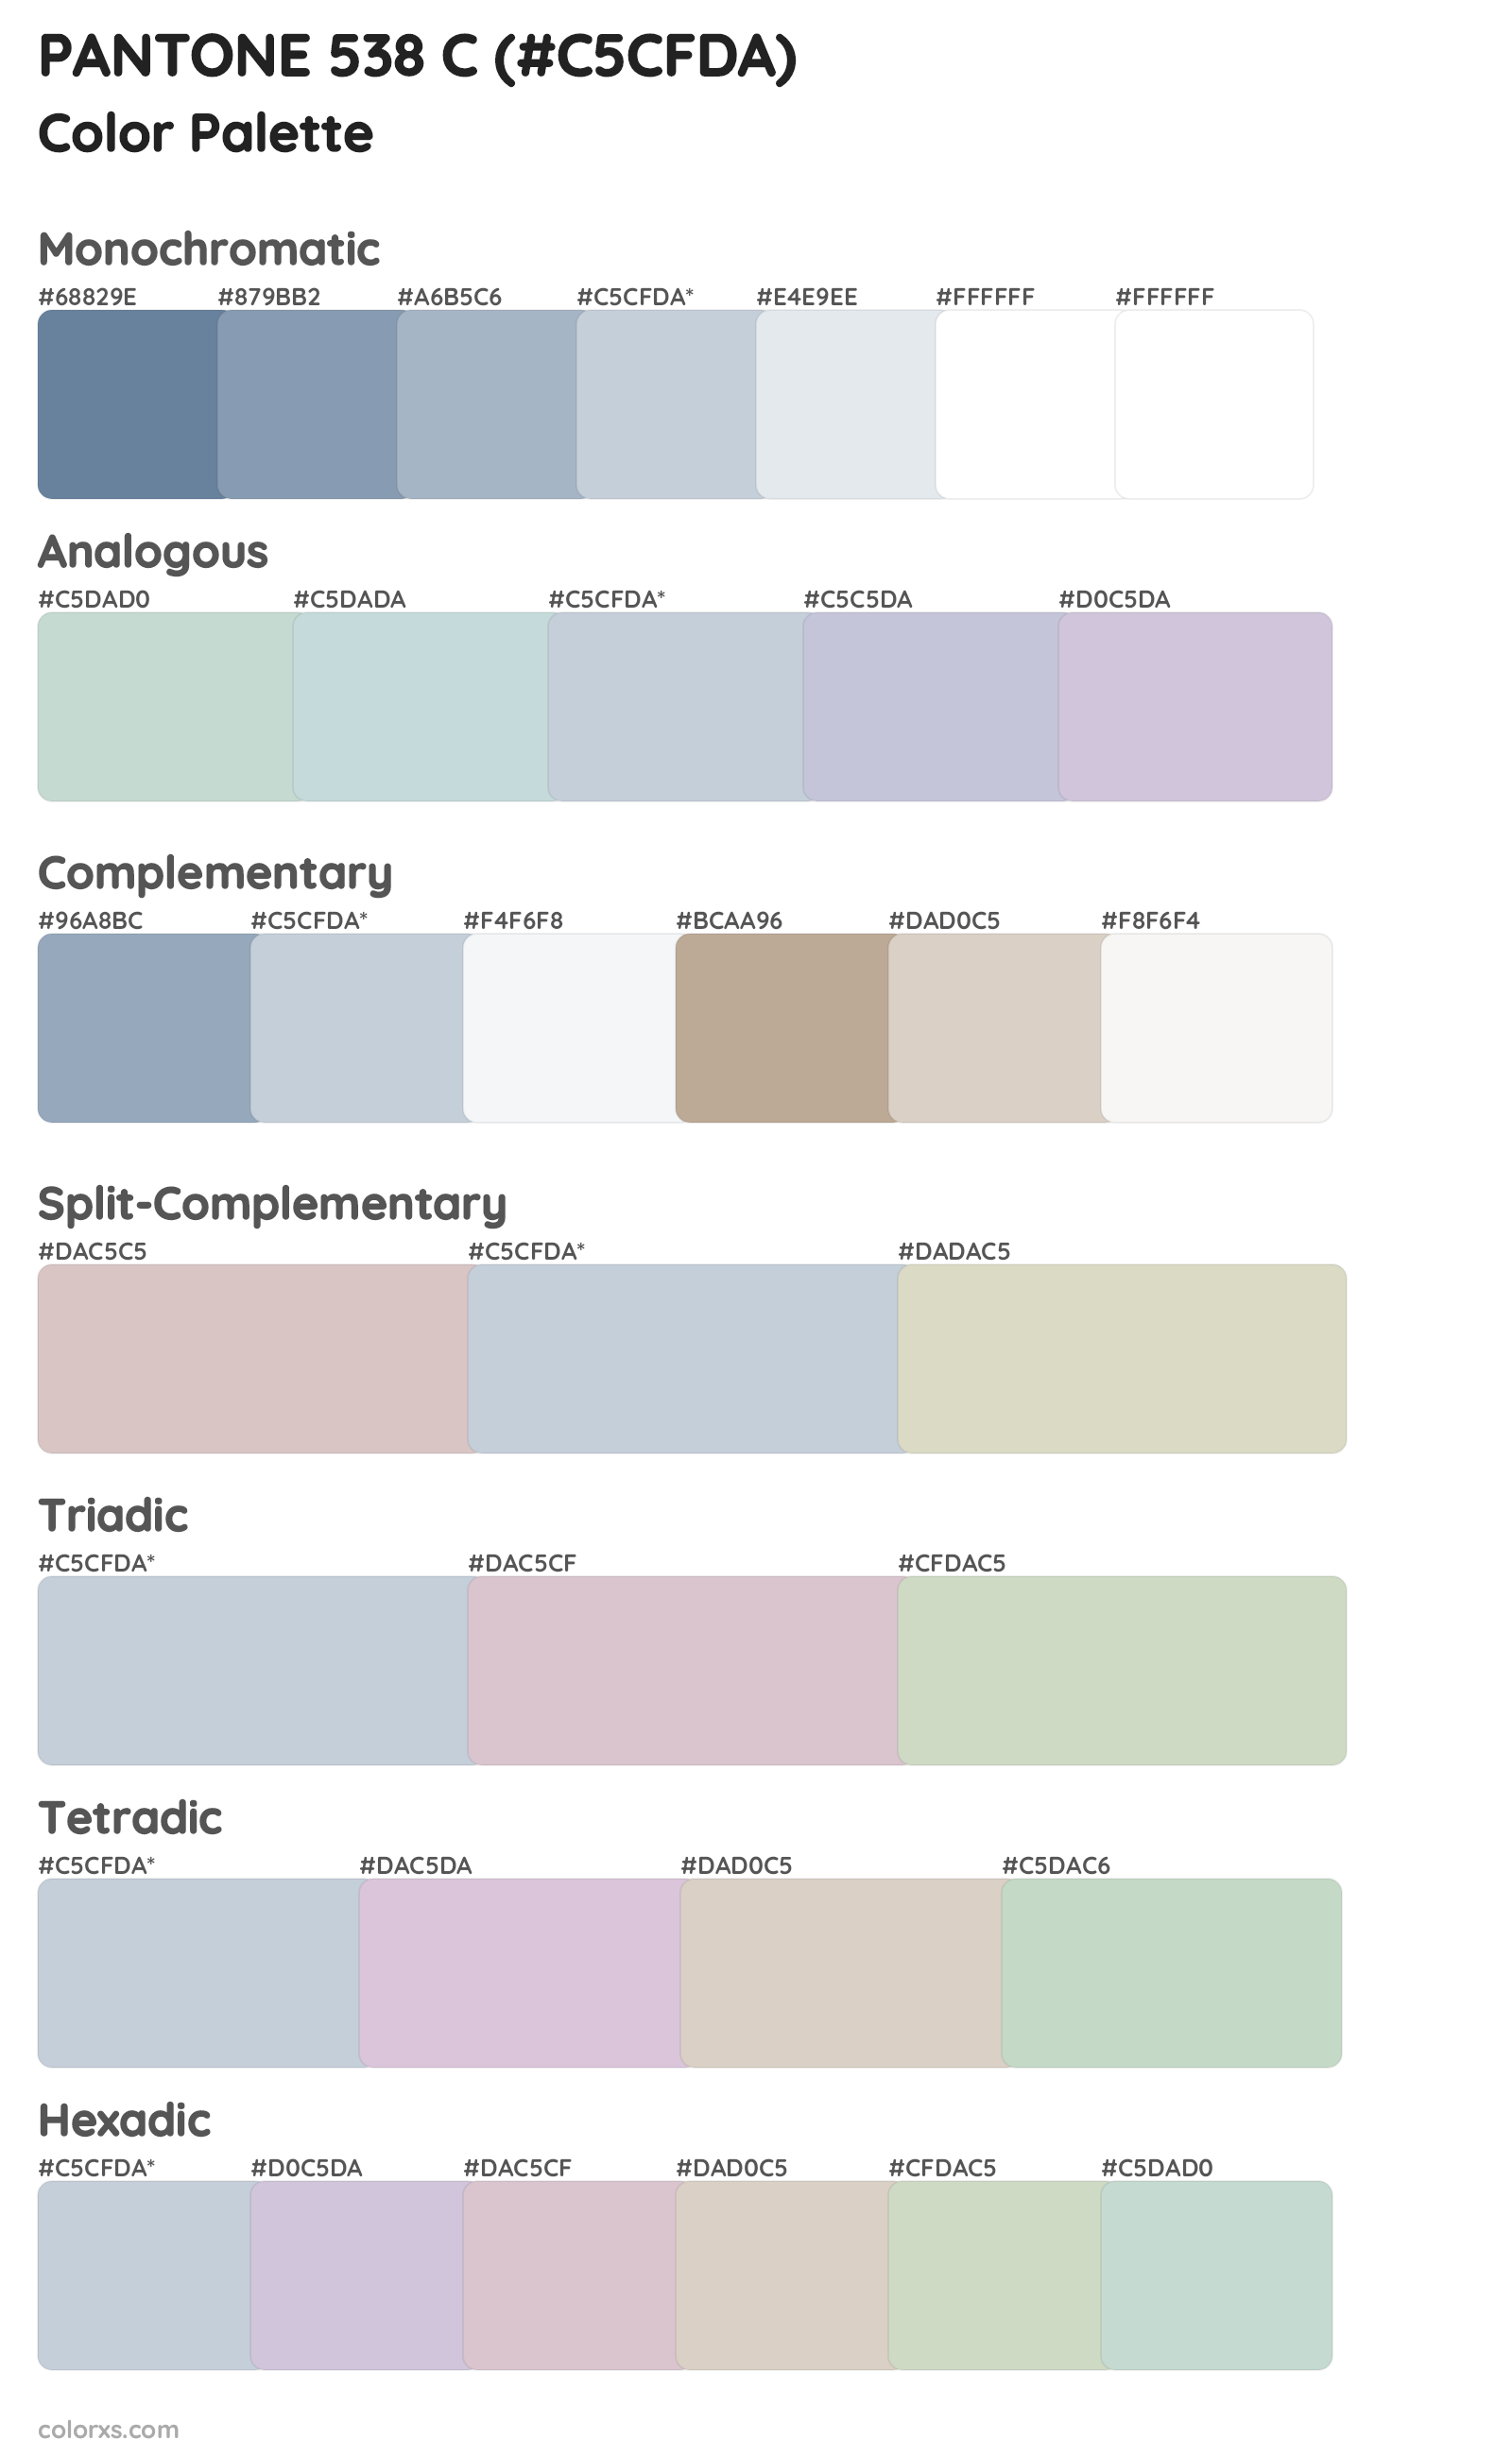 PANTONE 538 C Color Scheme Palettes